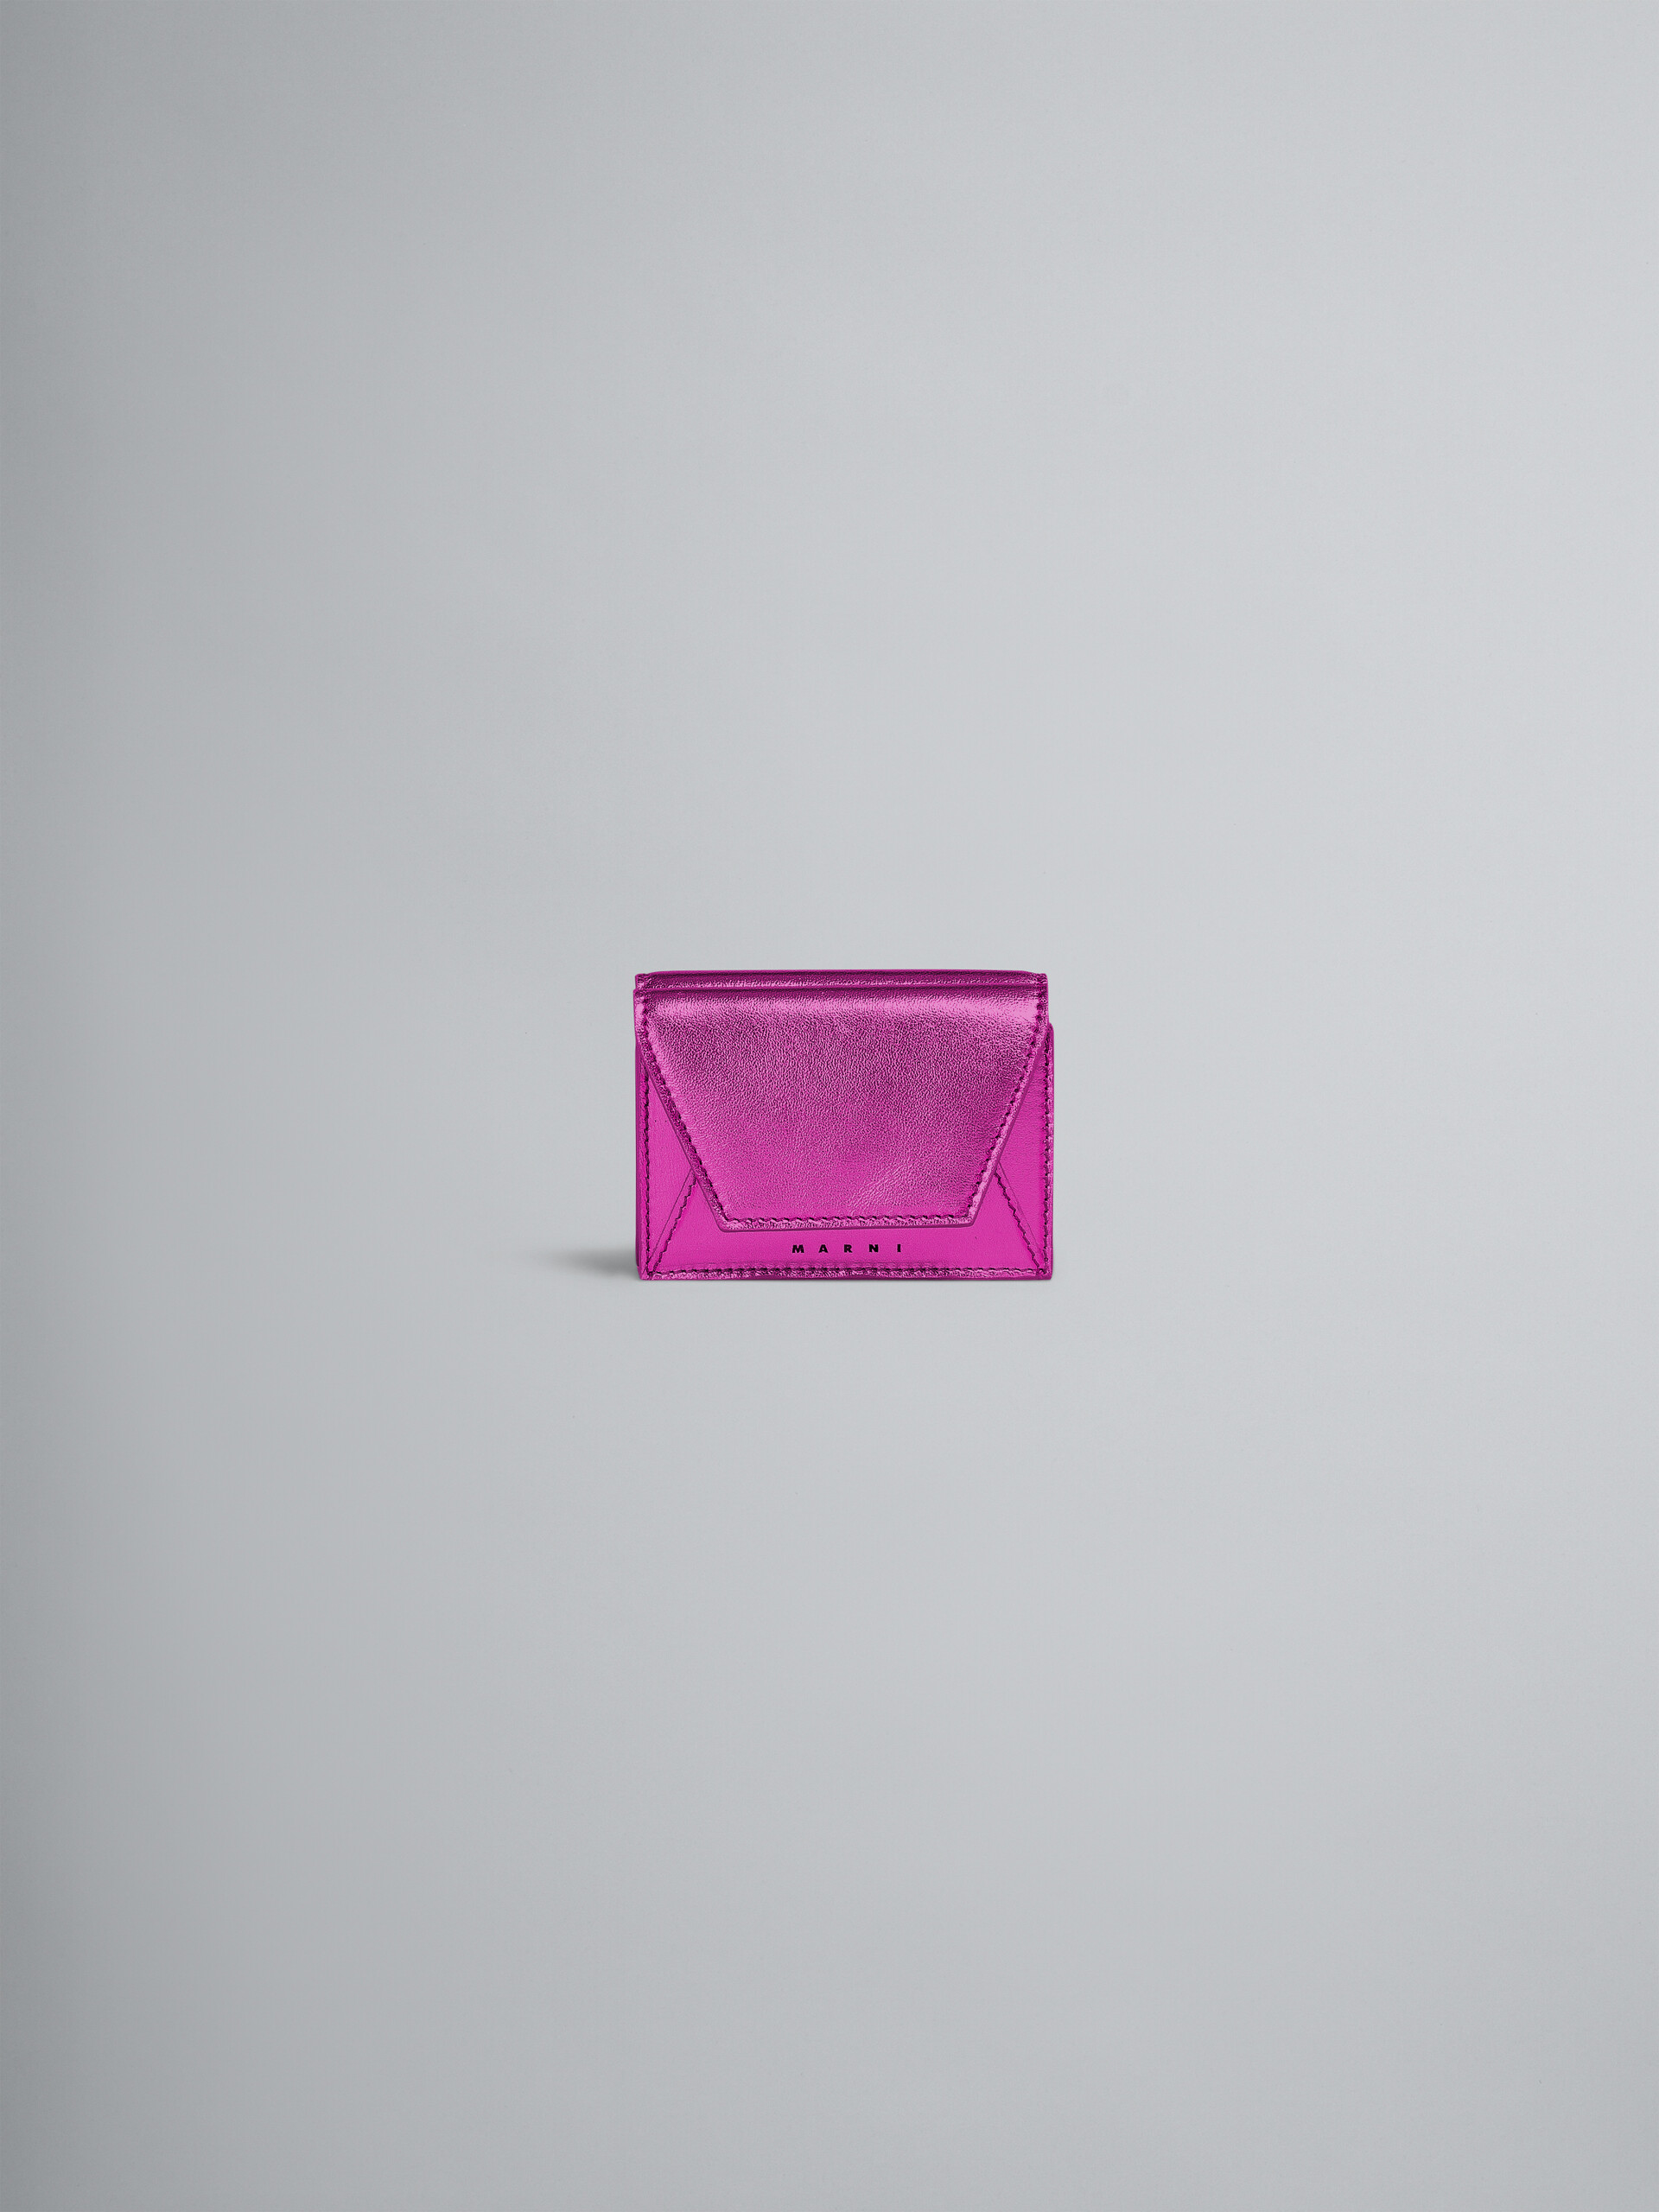 ピンクメタリック調 ナッパレザー三つ折りウォレット - 財布 - Image 1